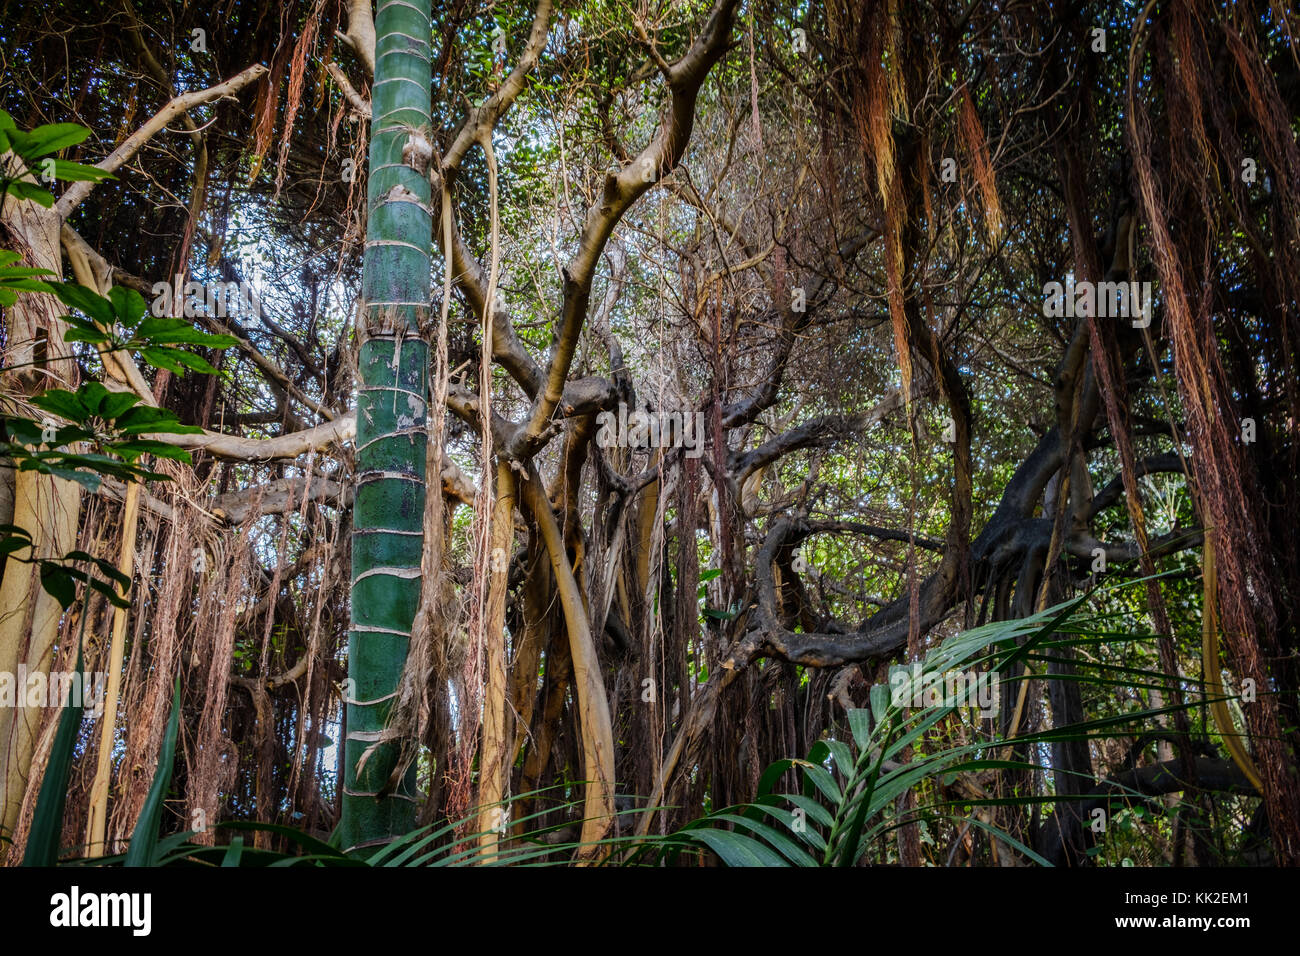 Des racines aériennes et lianes suspendues à des arbres à l'intérieur des forêts tropicales / jungle / forêt tropicale Banque D'Images